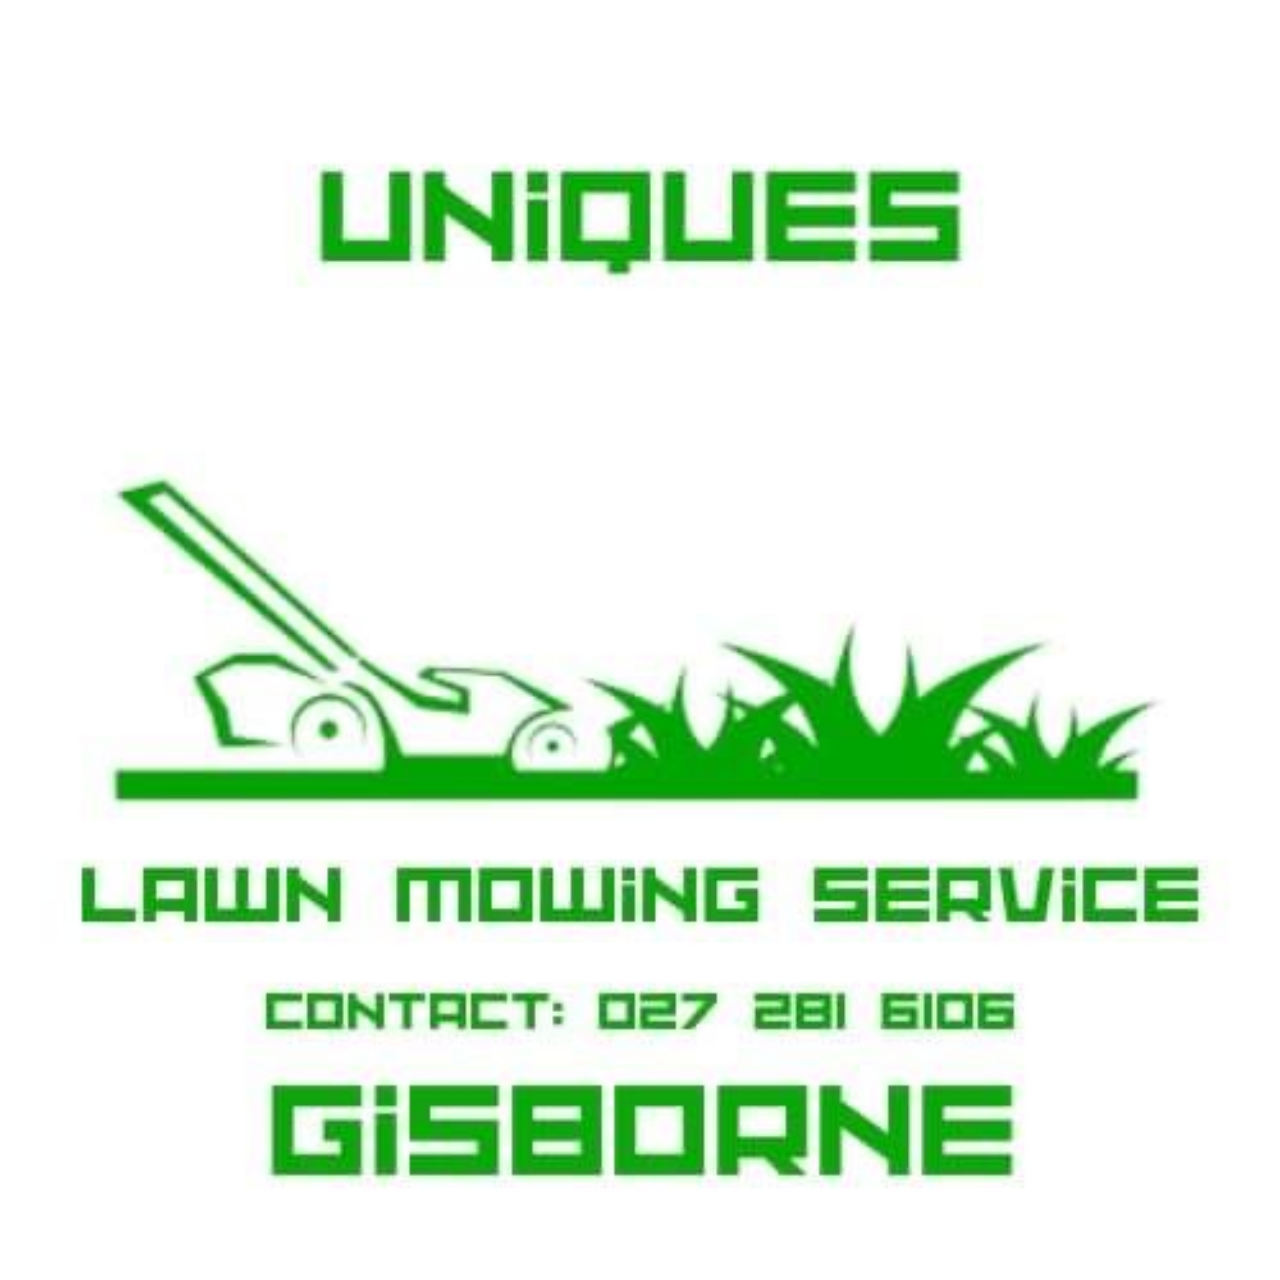 UNIQUE LAWN MOWING SERVICES GISBORNE's logo